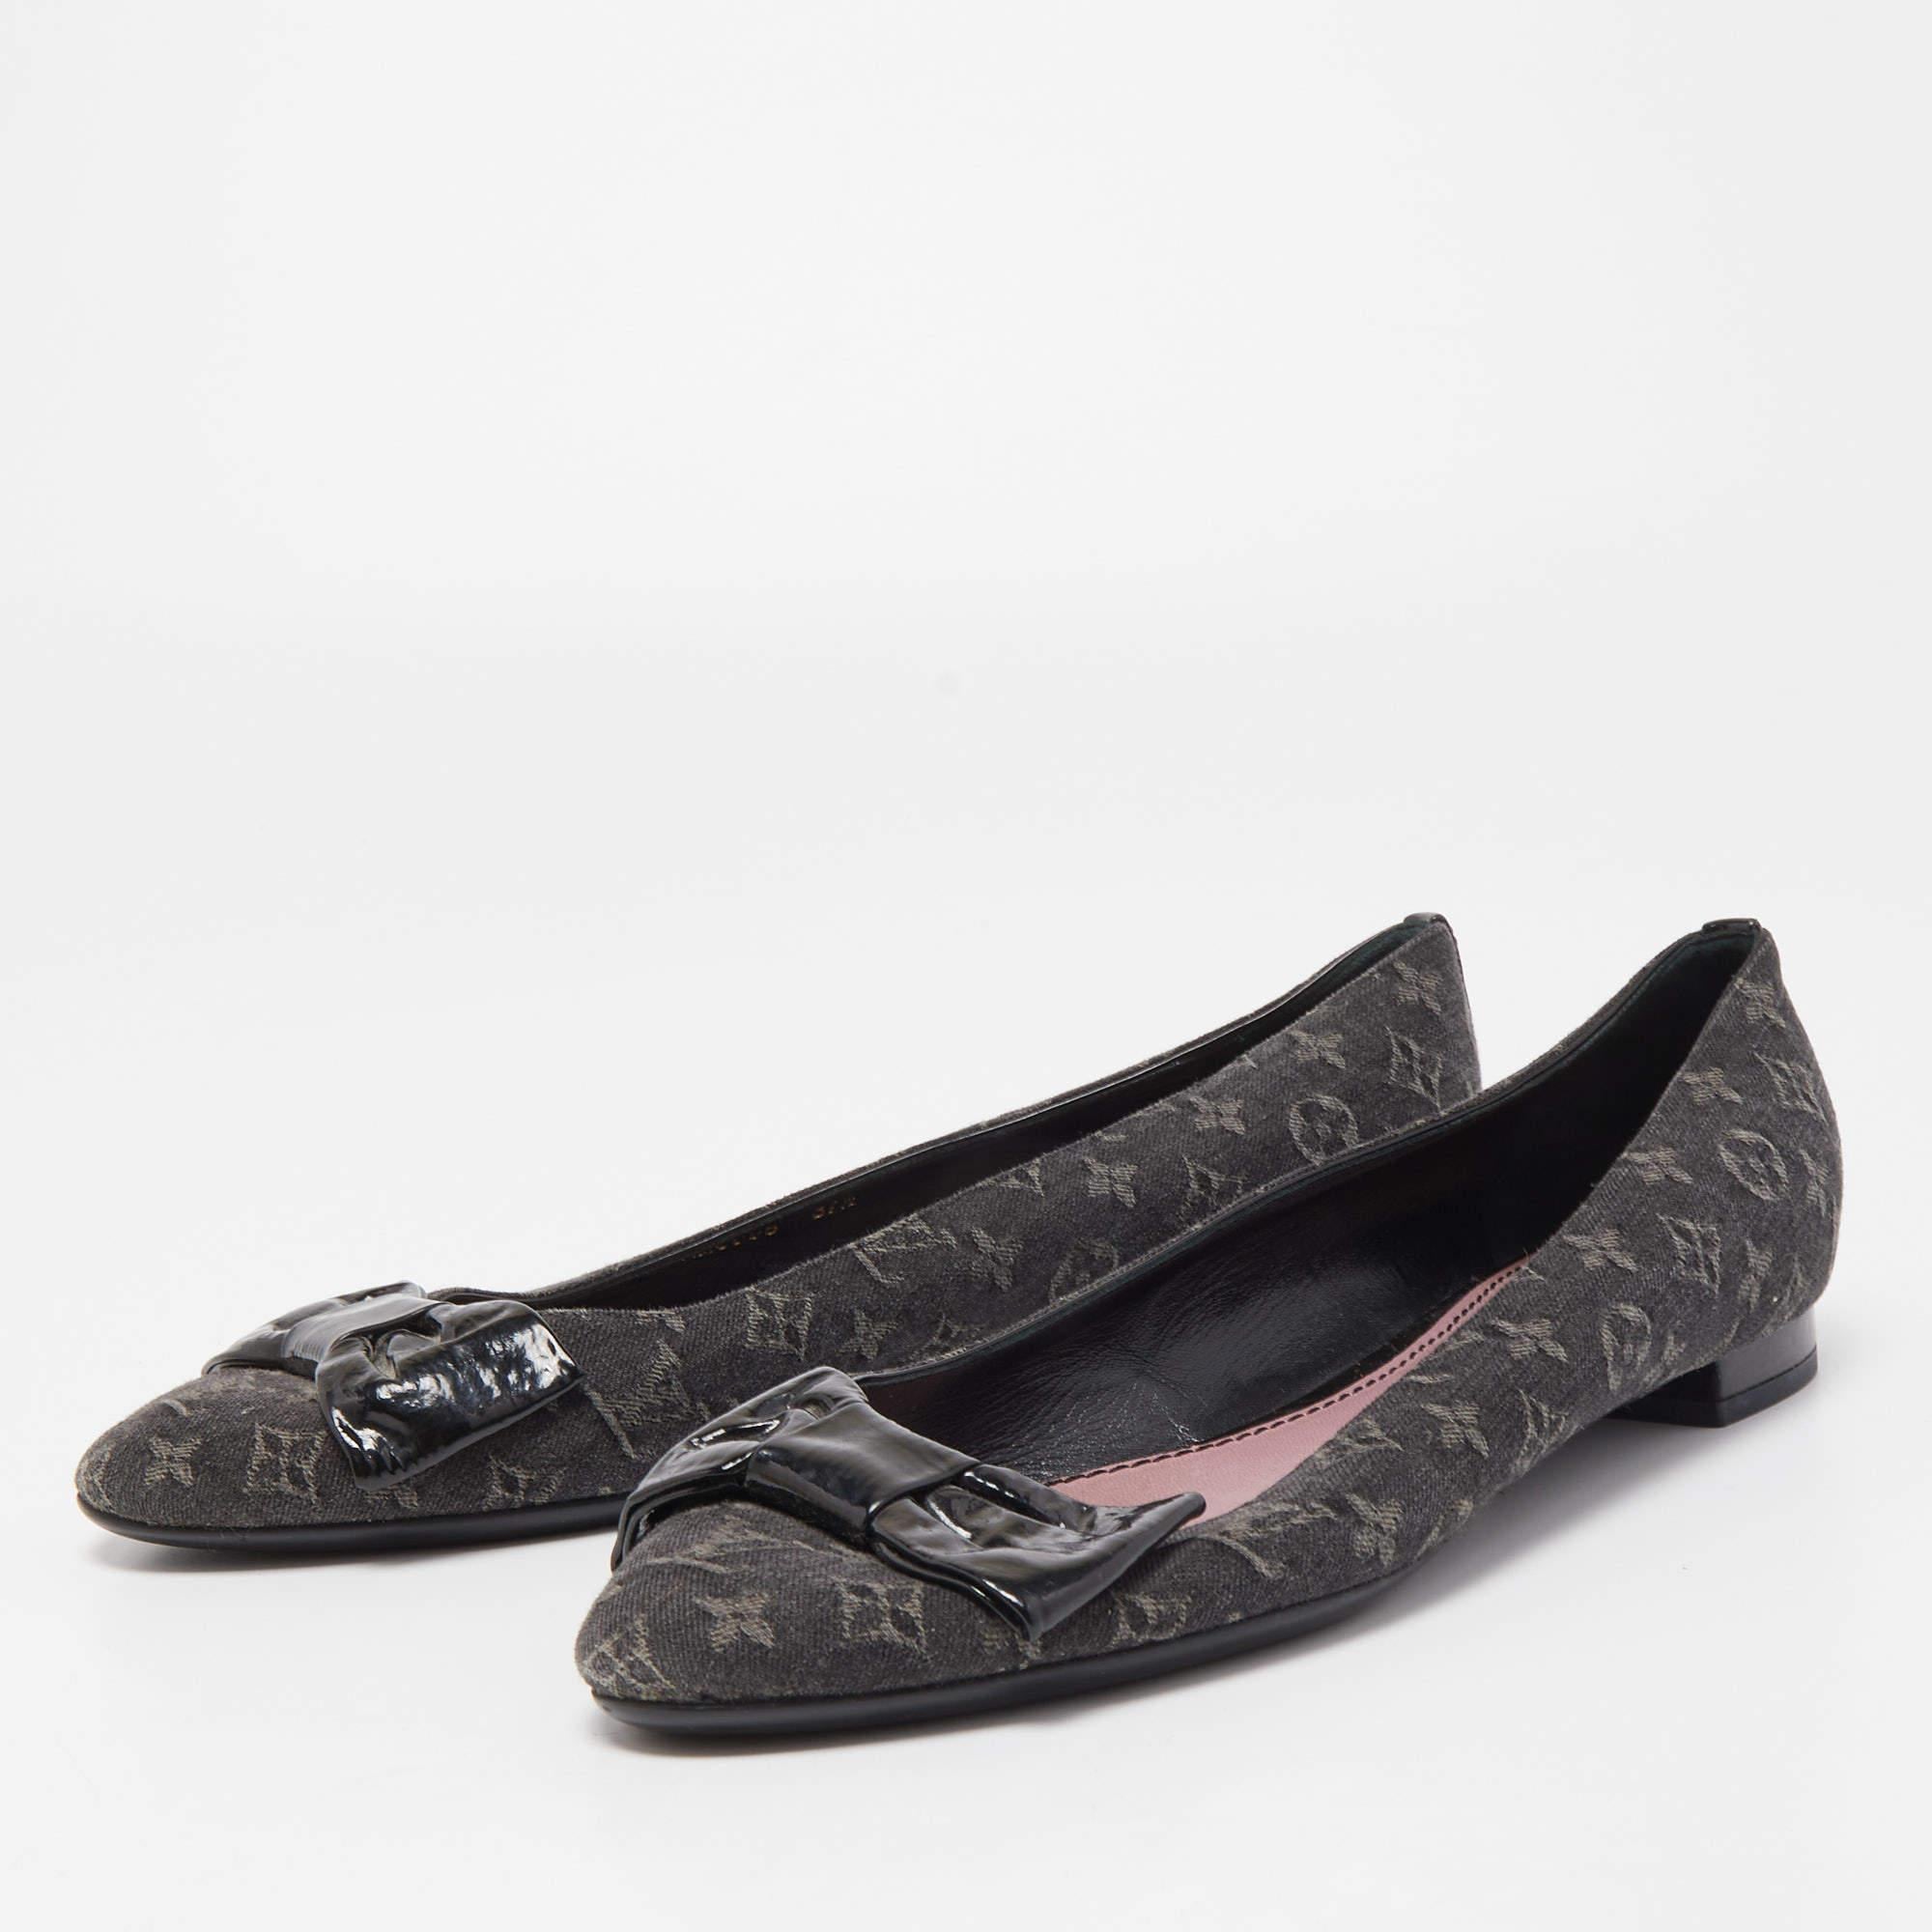 Women's Louis Vuitton Black Monogram Canvas and Patent Leather Bow Ballet Flats Size 37.